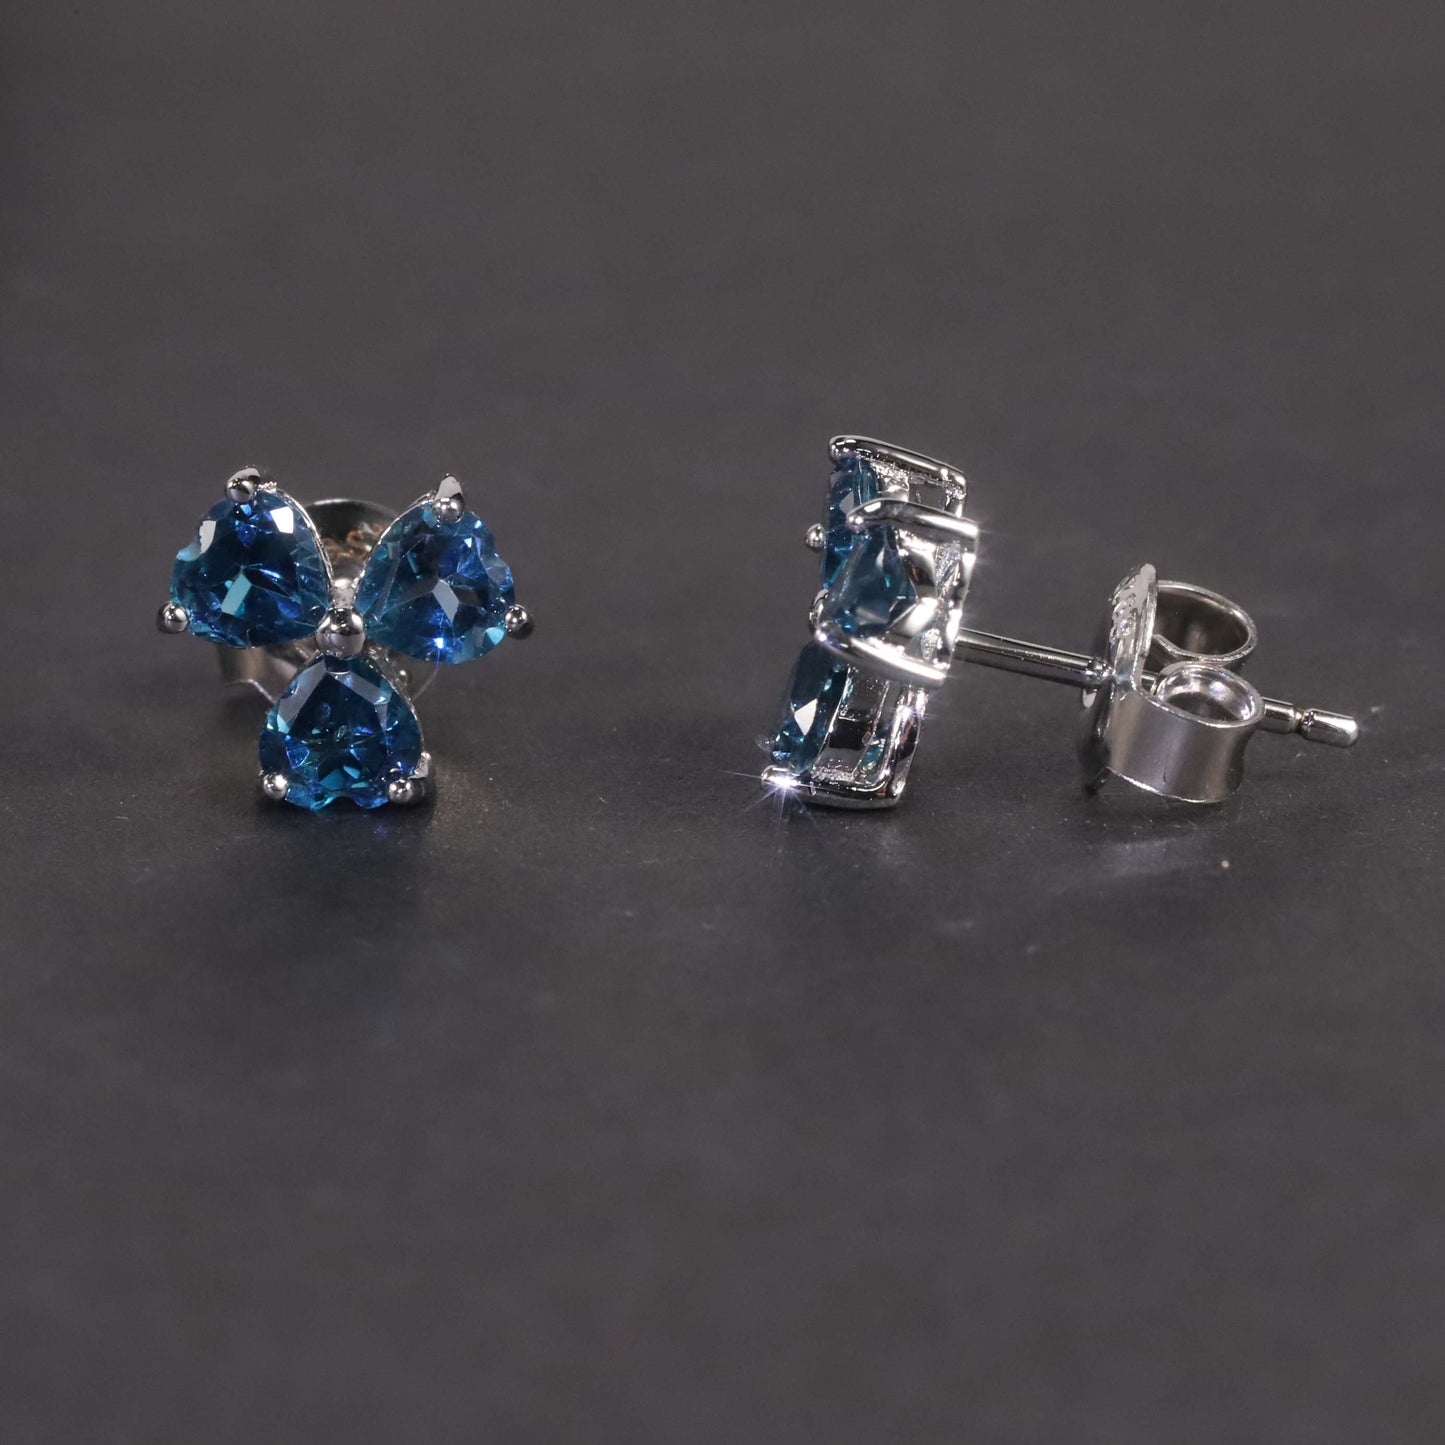 Flower Shape Stud Earrings in Sterling Silver -  London Blue Topaz